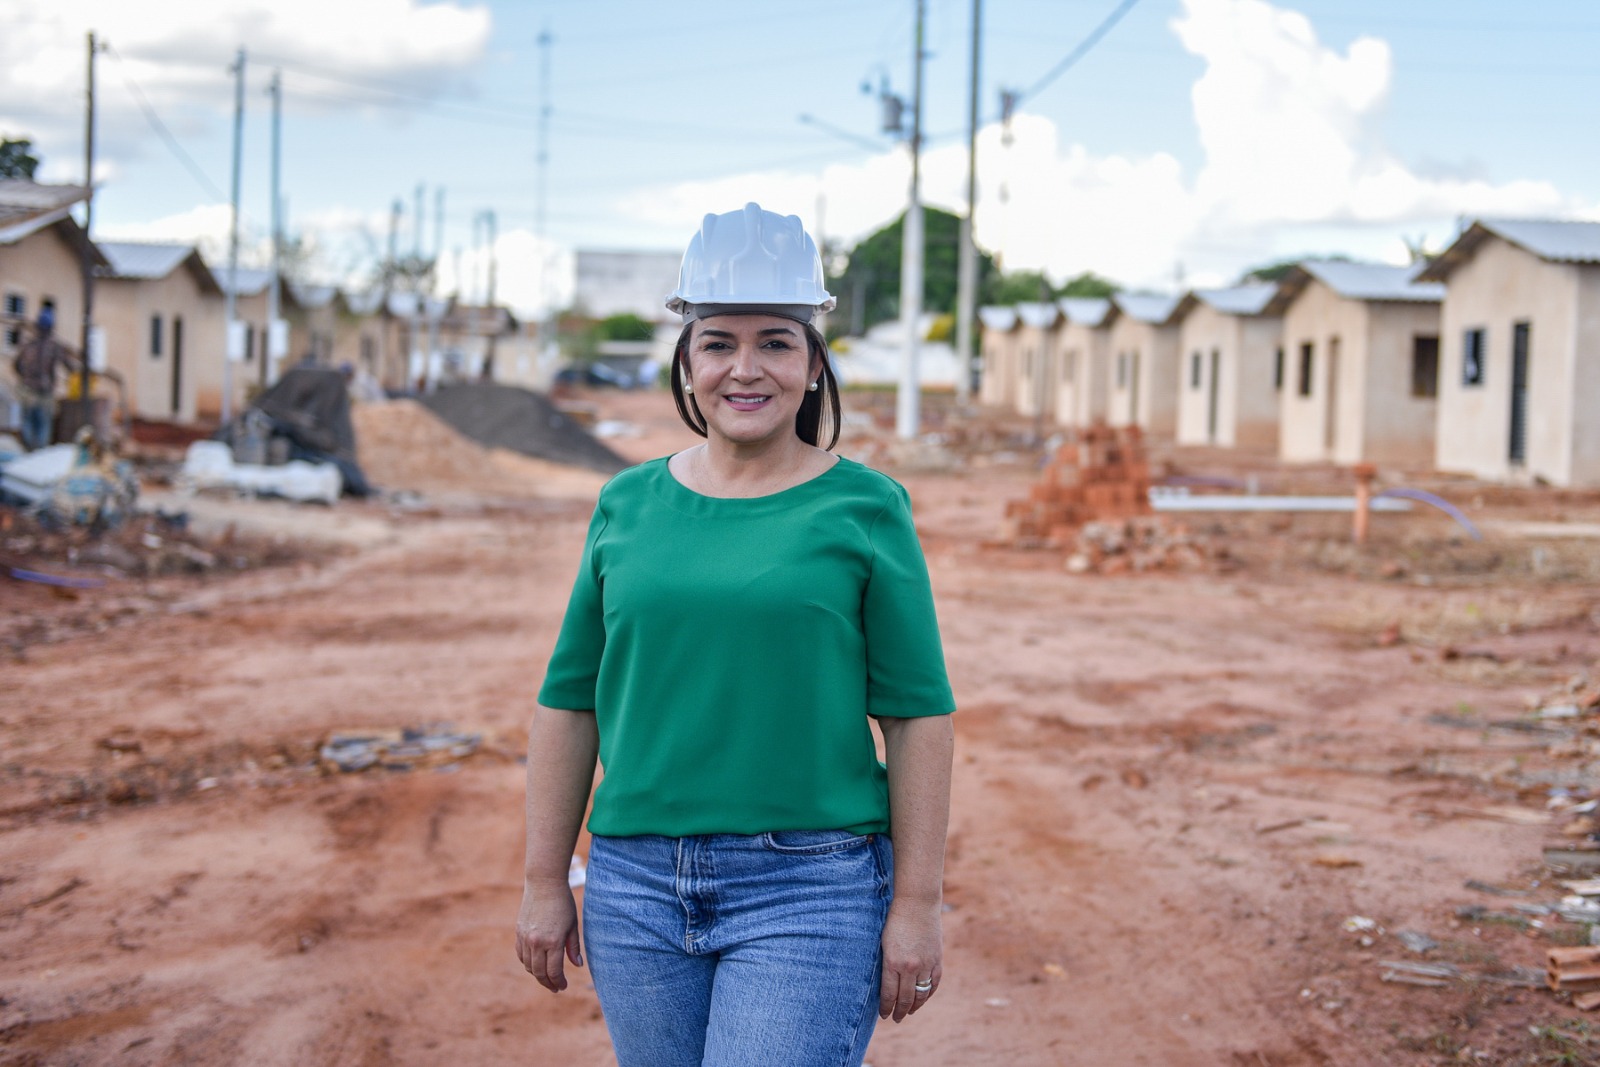 Políticas públicas habitacionais implementadas pela prefeita Adriane (PP) tirou famílias de favelas e tornou realidade o sonho da casa própria